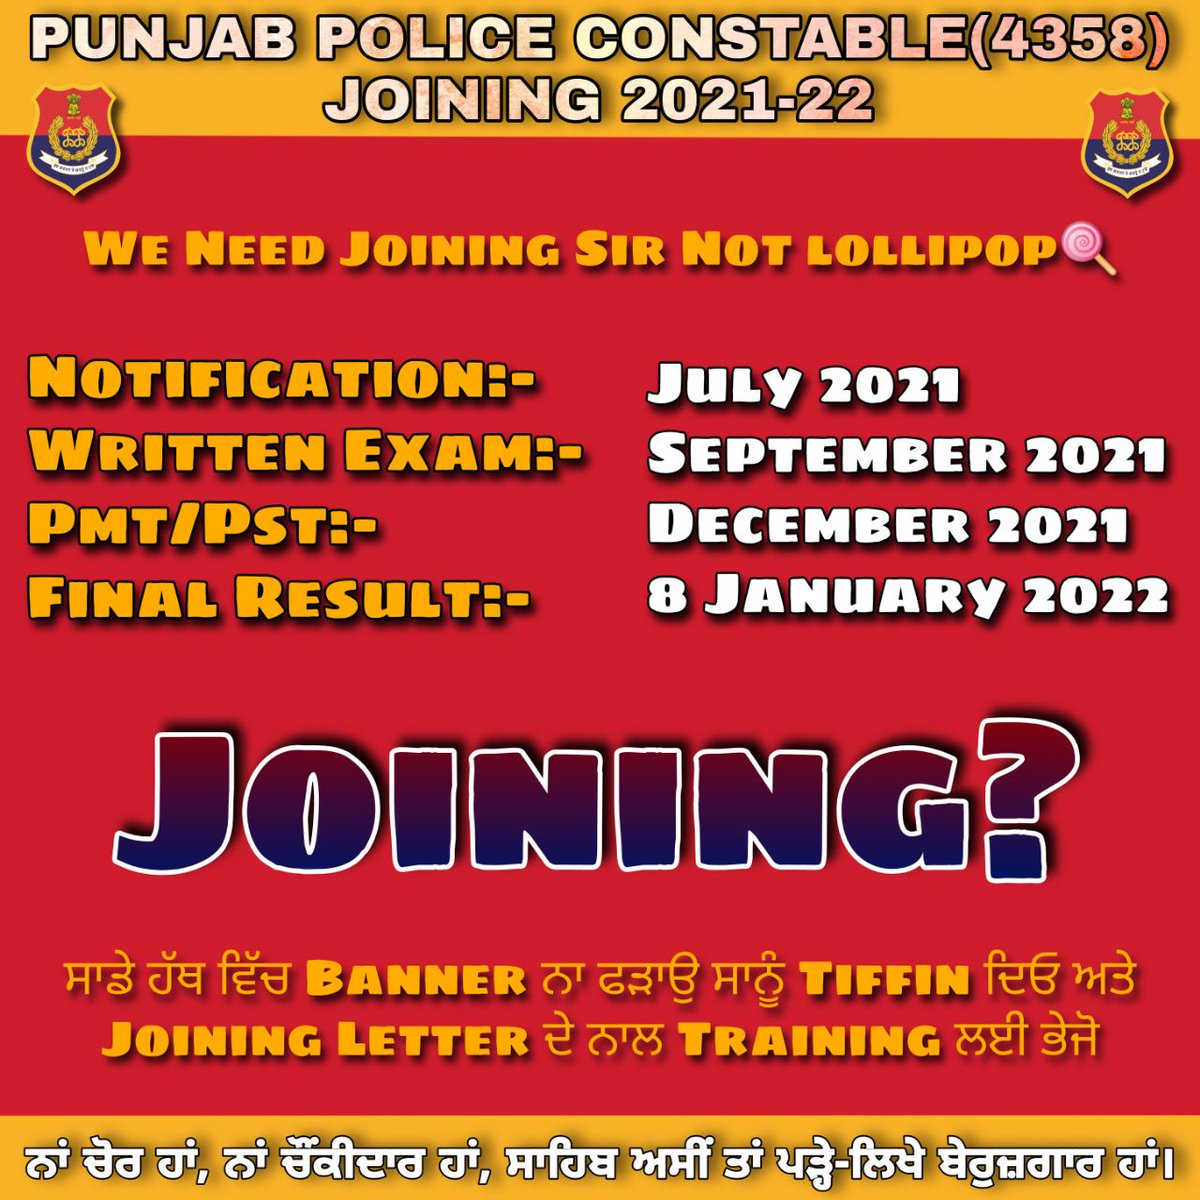 ਮਾਨਯੋਗ ਮੁੱਖ ਮੰਤਰੀ ਸਾਬ ਜੀ ਜਰਾ ਇਧਰ ਵੀ ਗੌਰ ਕਰਲੋ ,,ਪੰਜਾਬ ਪੁਲਸ ਦੀ ਭਰਤੀ ਲਮਕਦੀ ਨੂੰ ਪੂਰਾ ਸਾਲ ਹੋ ਗਿਆ, #punjab_police_constable_joining #punjab_police_constable_joining @BhagwantMann @DGPPunjabPolice @PunjabPoliceInd @GurpreetDeo3 @HarpalCheemaMLA